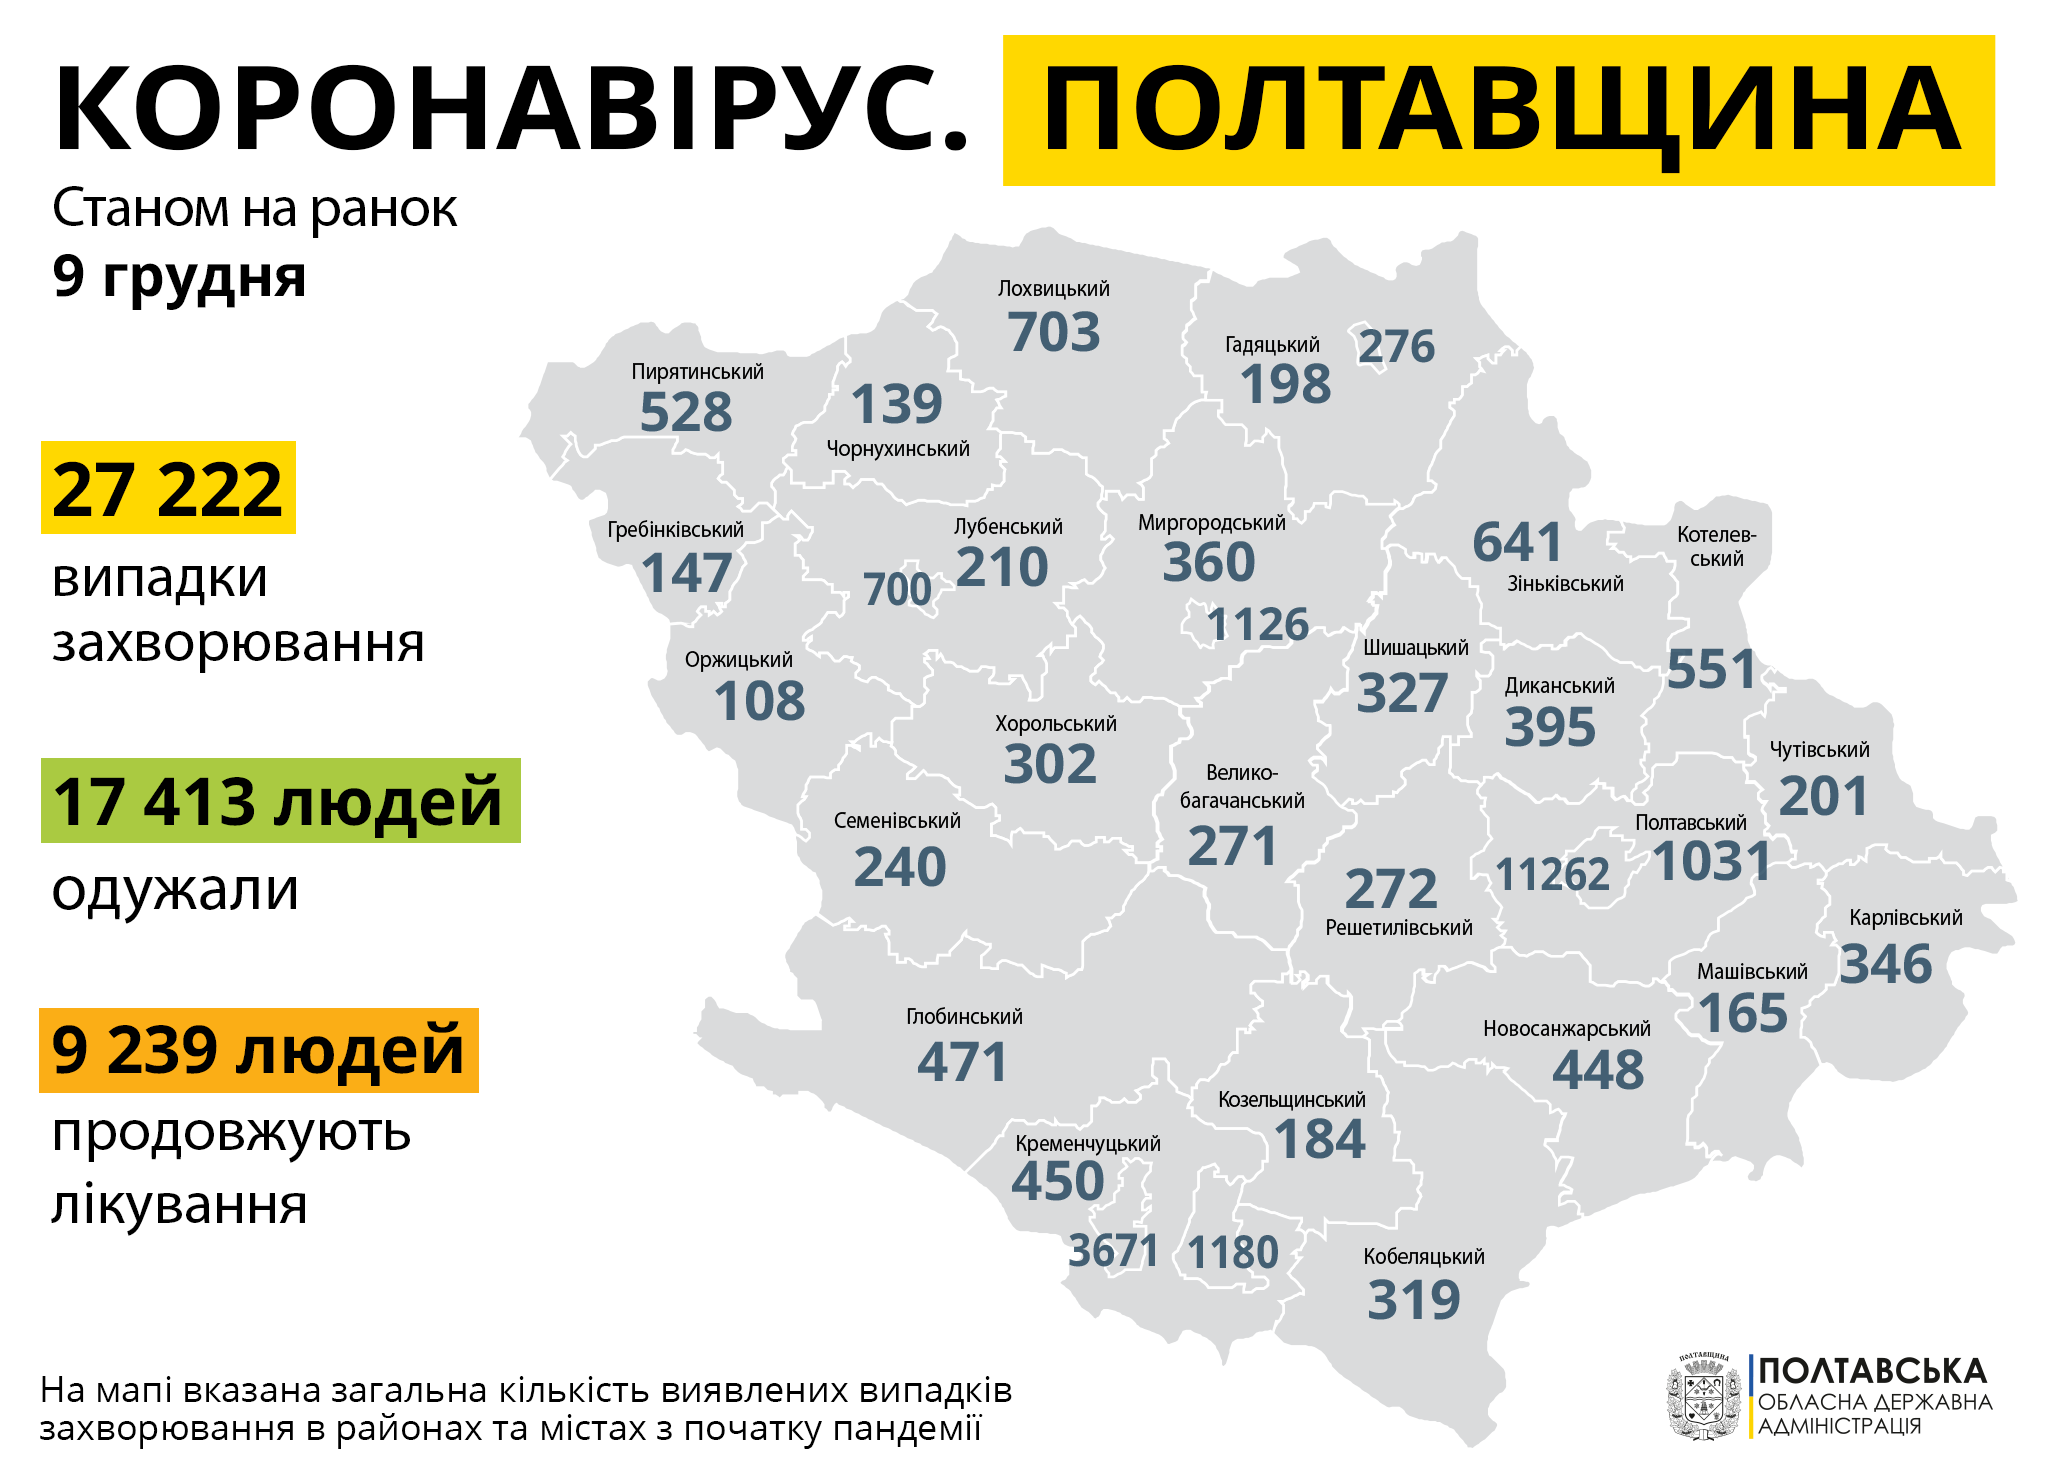  На Полтавщині за минулу добу зареєстровано 651 нових випадків захворювання на COVID-19